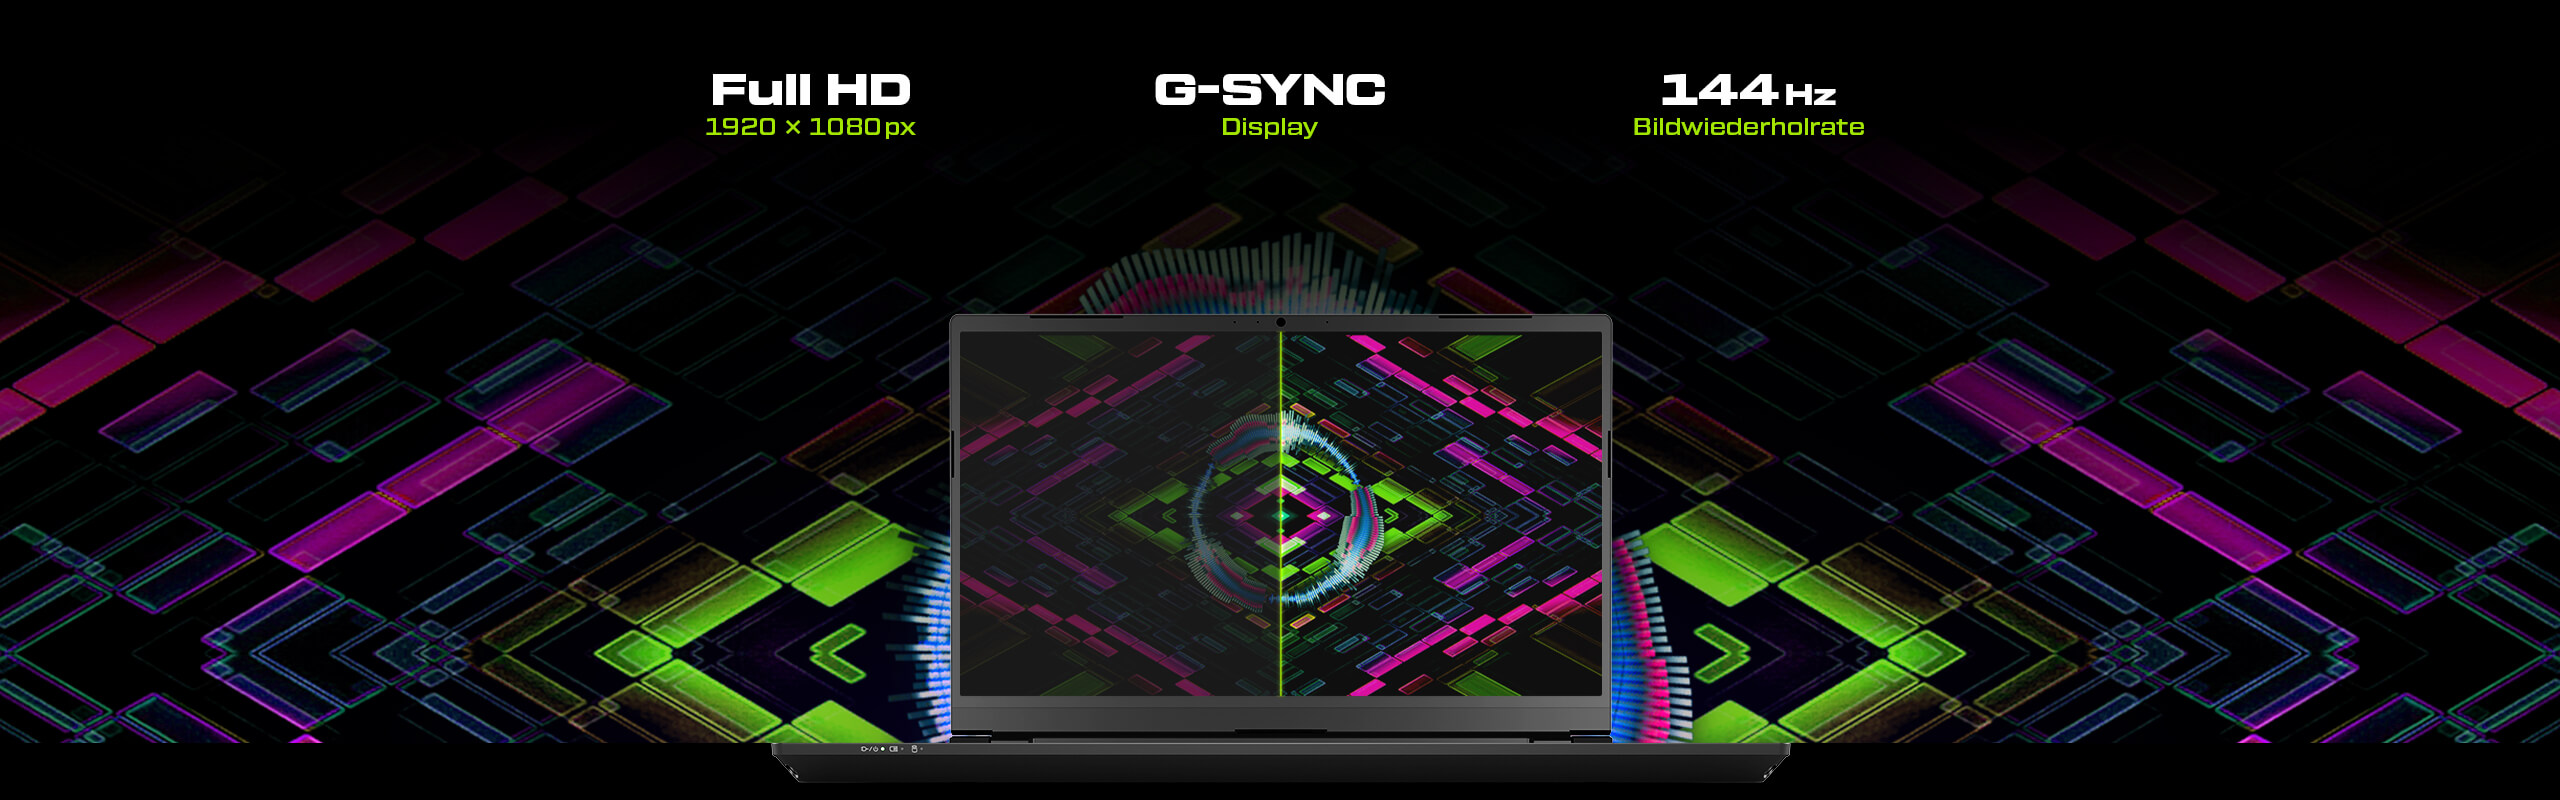 XMG PRO 15 Audio Gaming Laptop 144 Hz Display